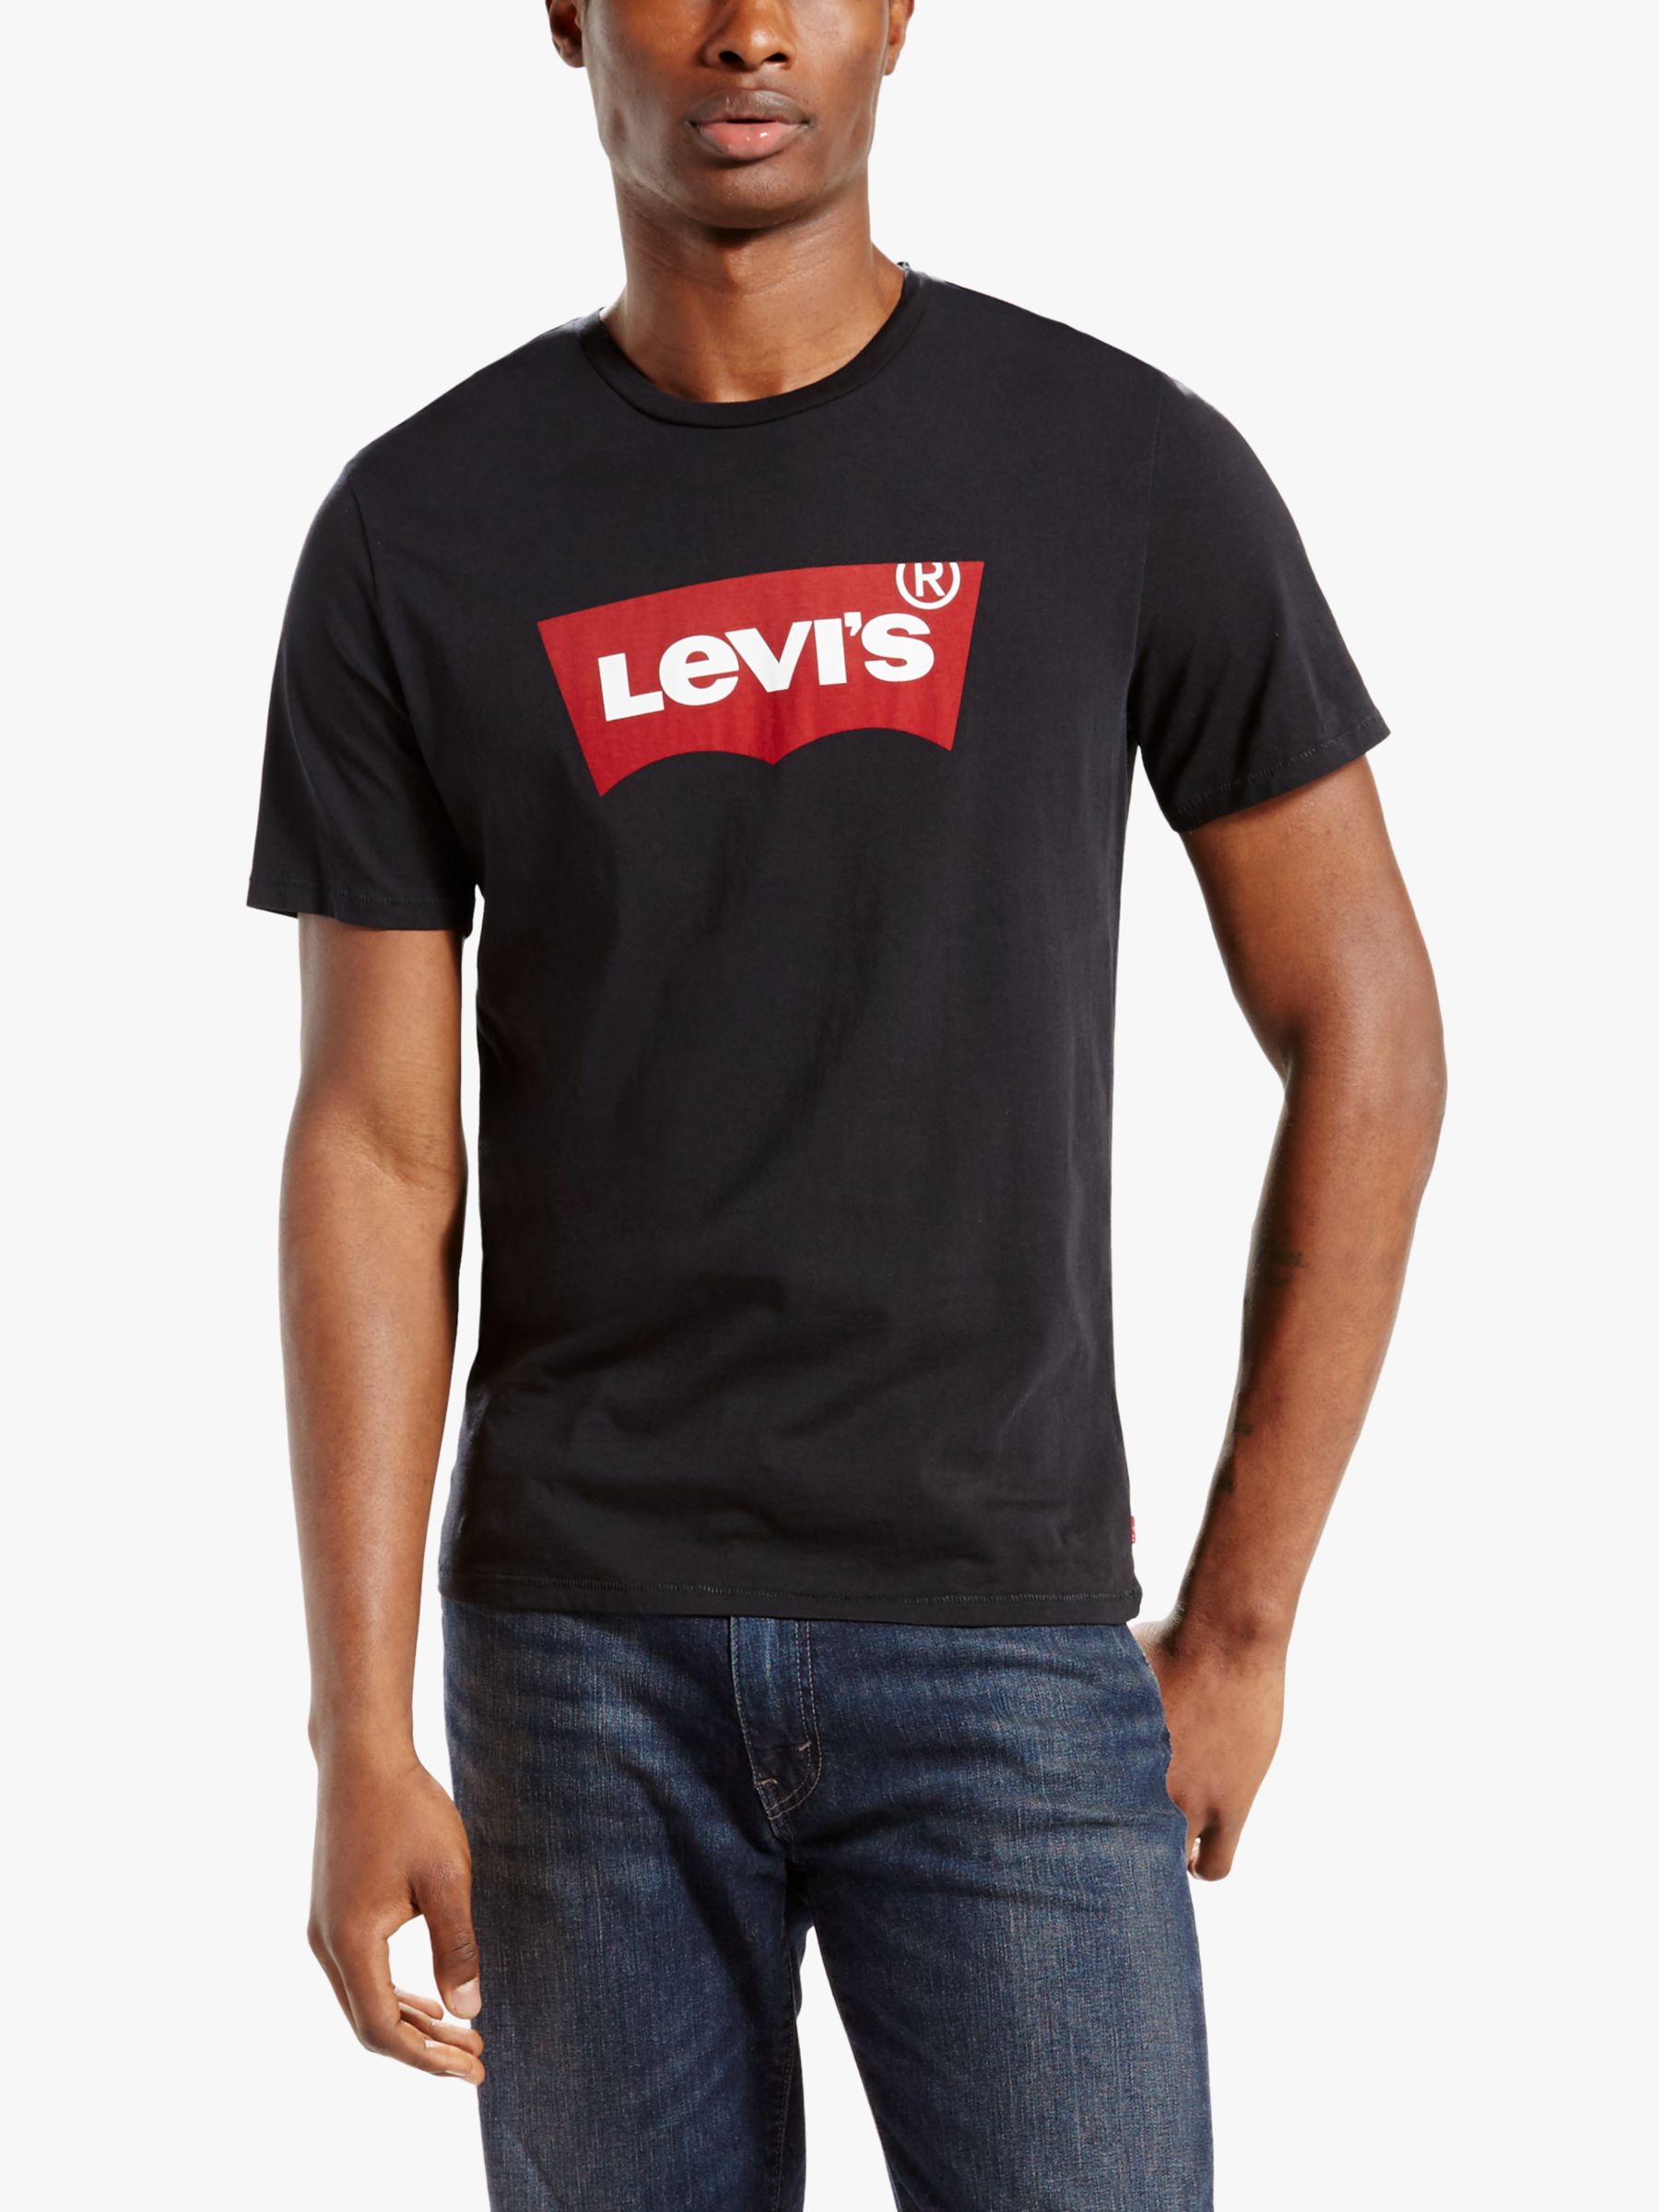 Купить футболку levis. Футболка Levis черная 501. Футболка левайс мужская. Футболка левайс черная мужская. 173690453 Levis t-Shirt.